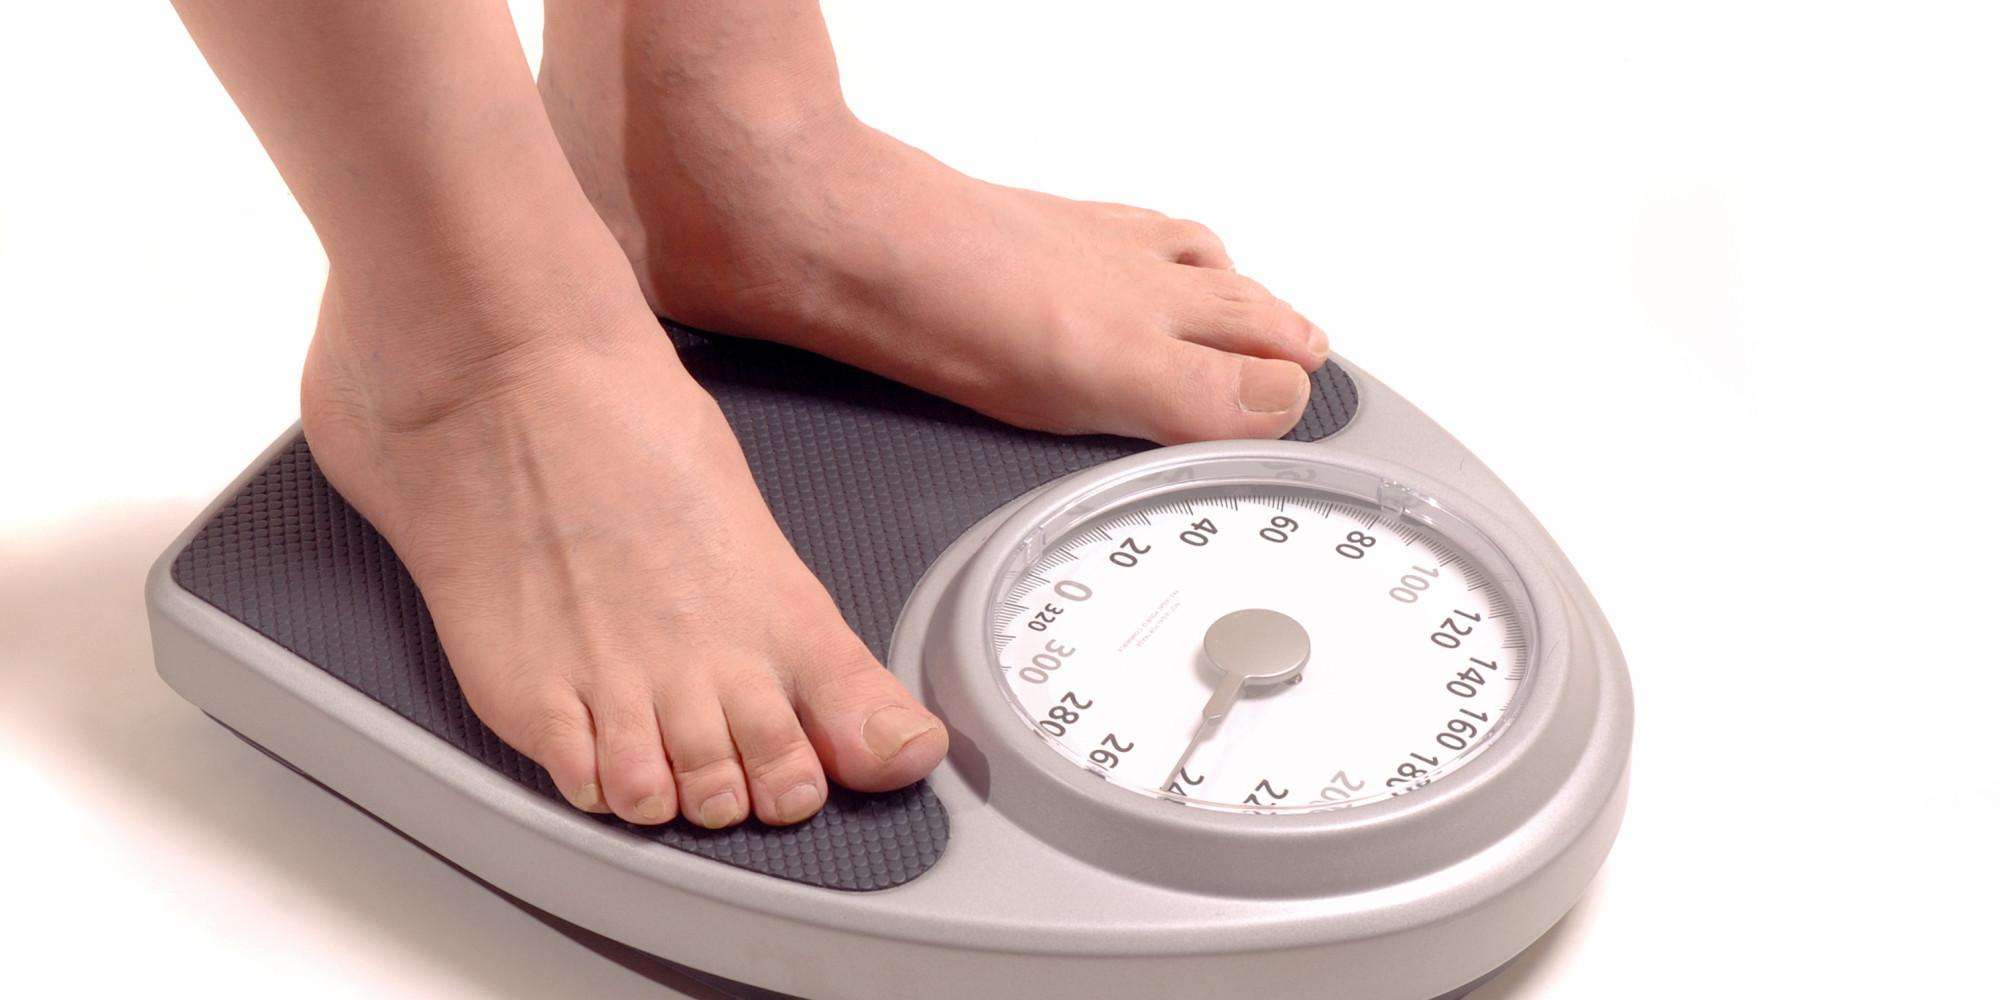 यह देसी इलाज सिर्फ 1 महीने में आपका वजन बढ़ा देगा, 100% गारंटी